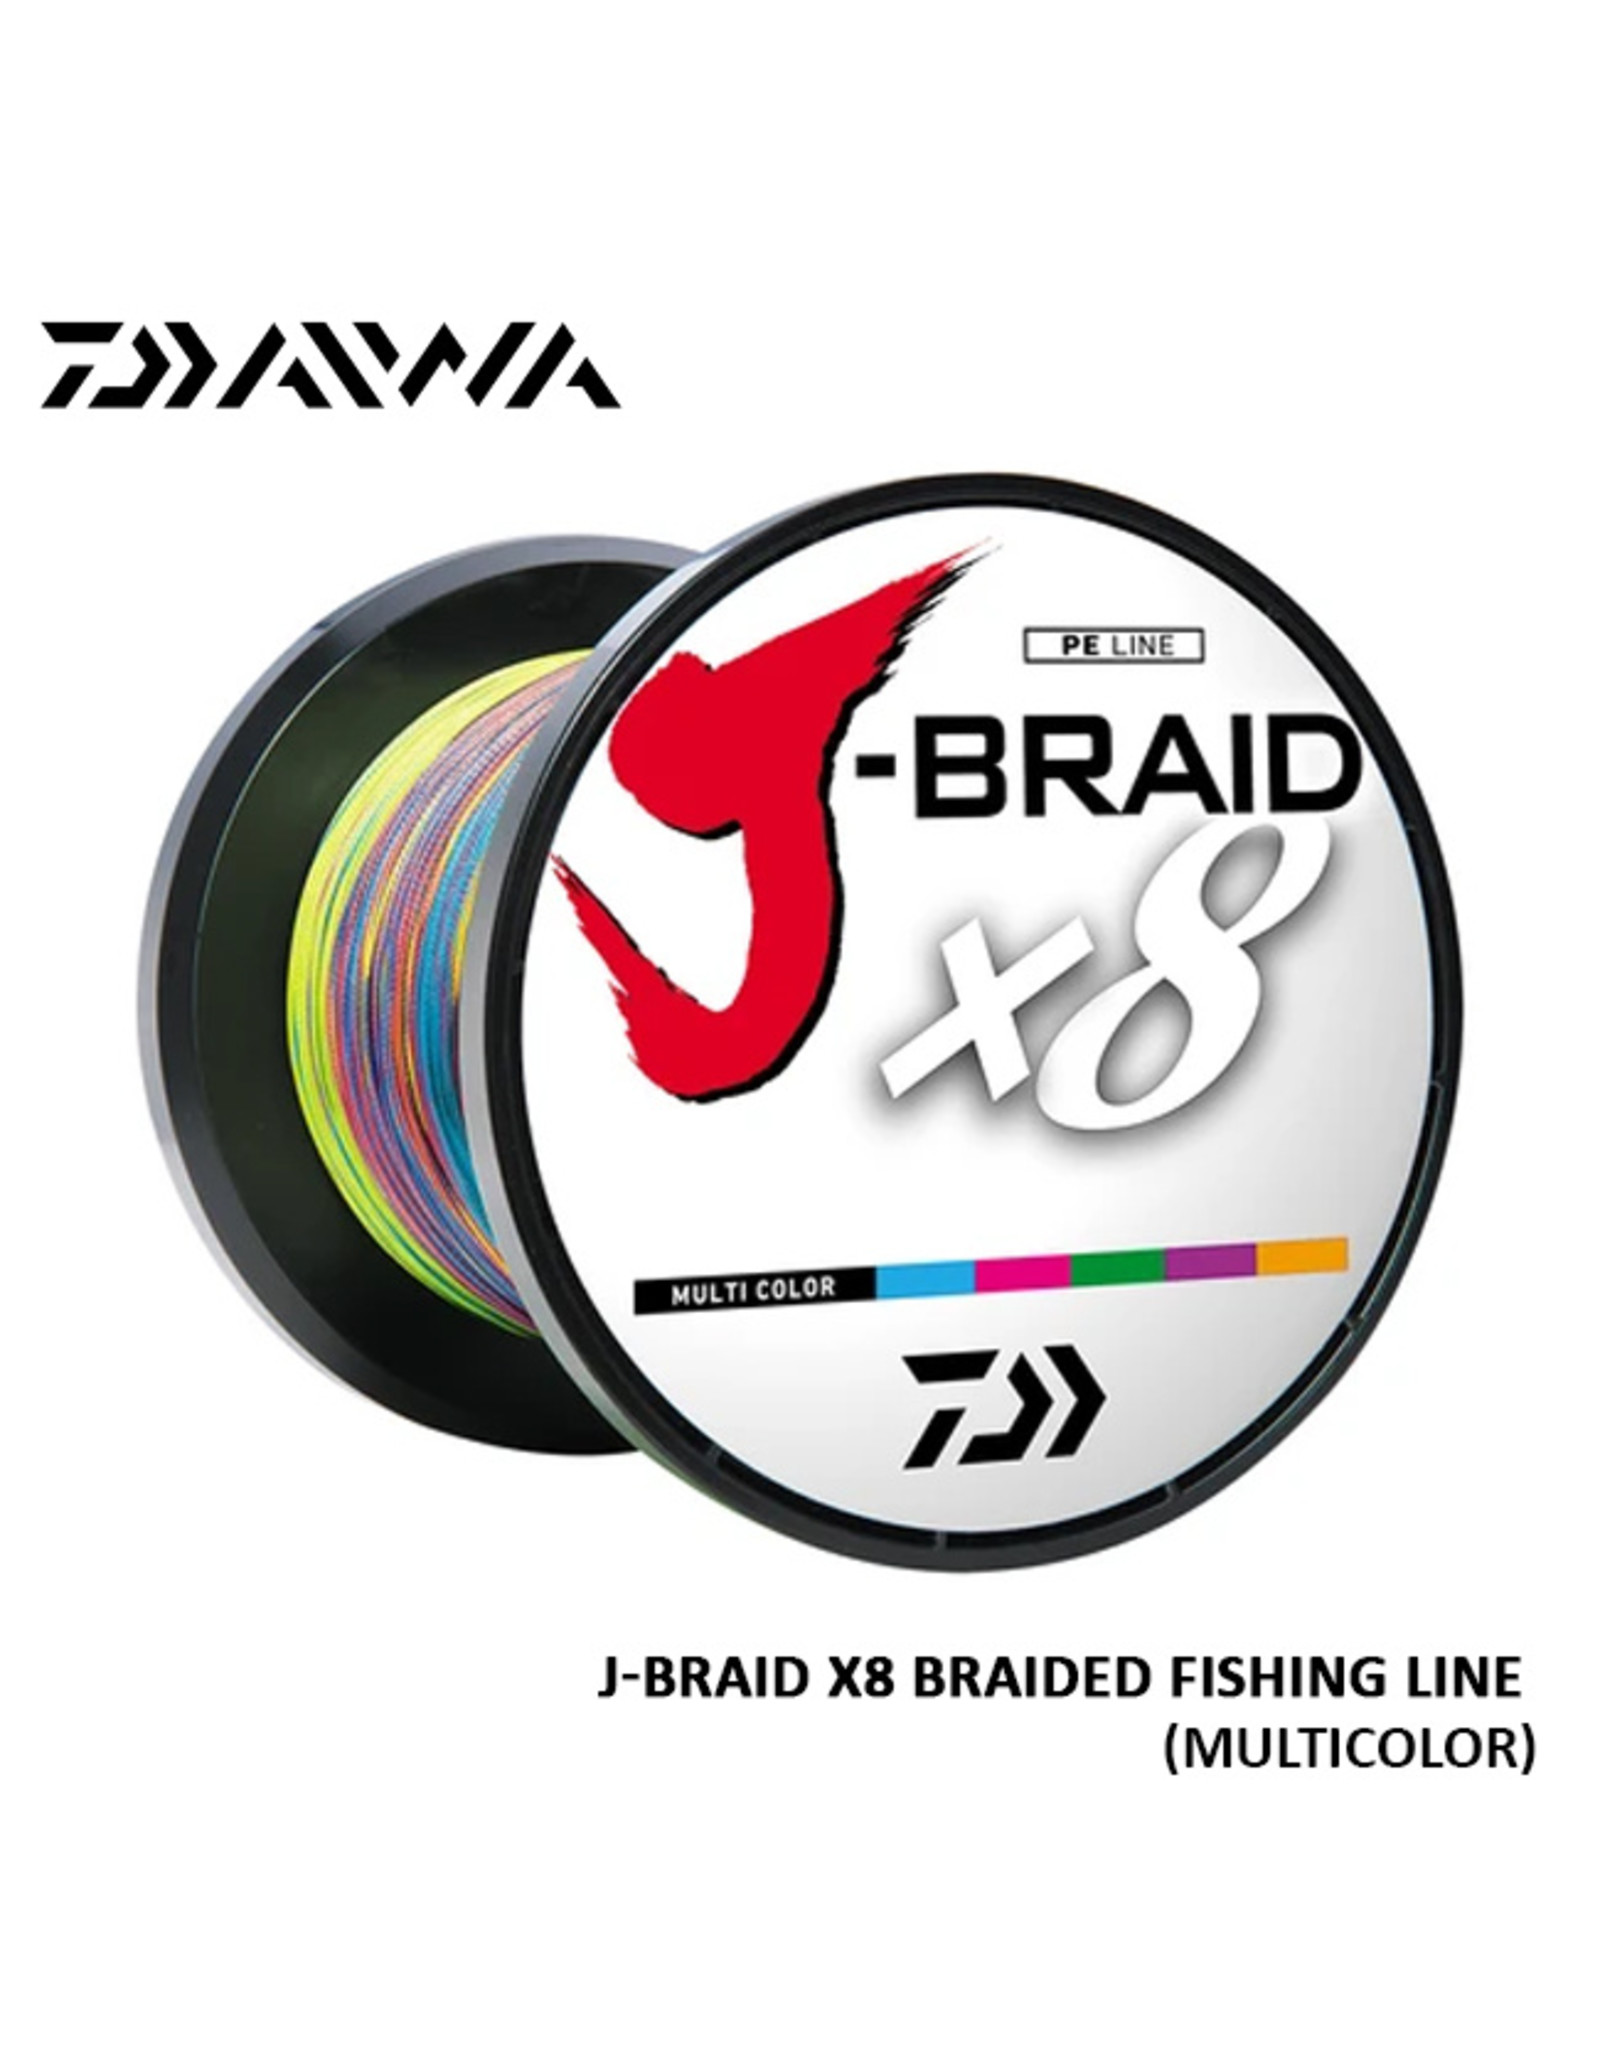 DAIWA J-Braided x8 Fishing Line, 500 Meter, Multicolor, DAIWA, 50#